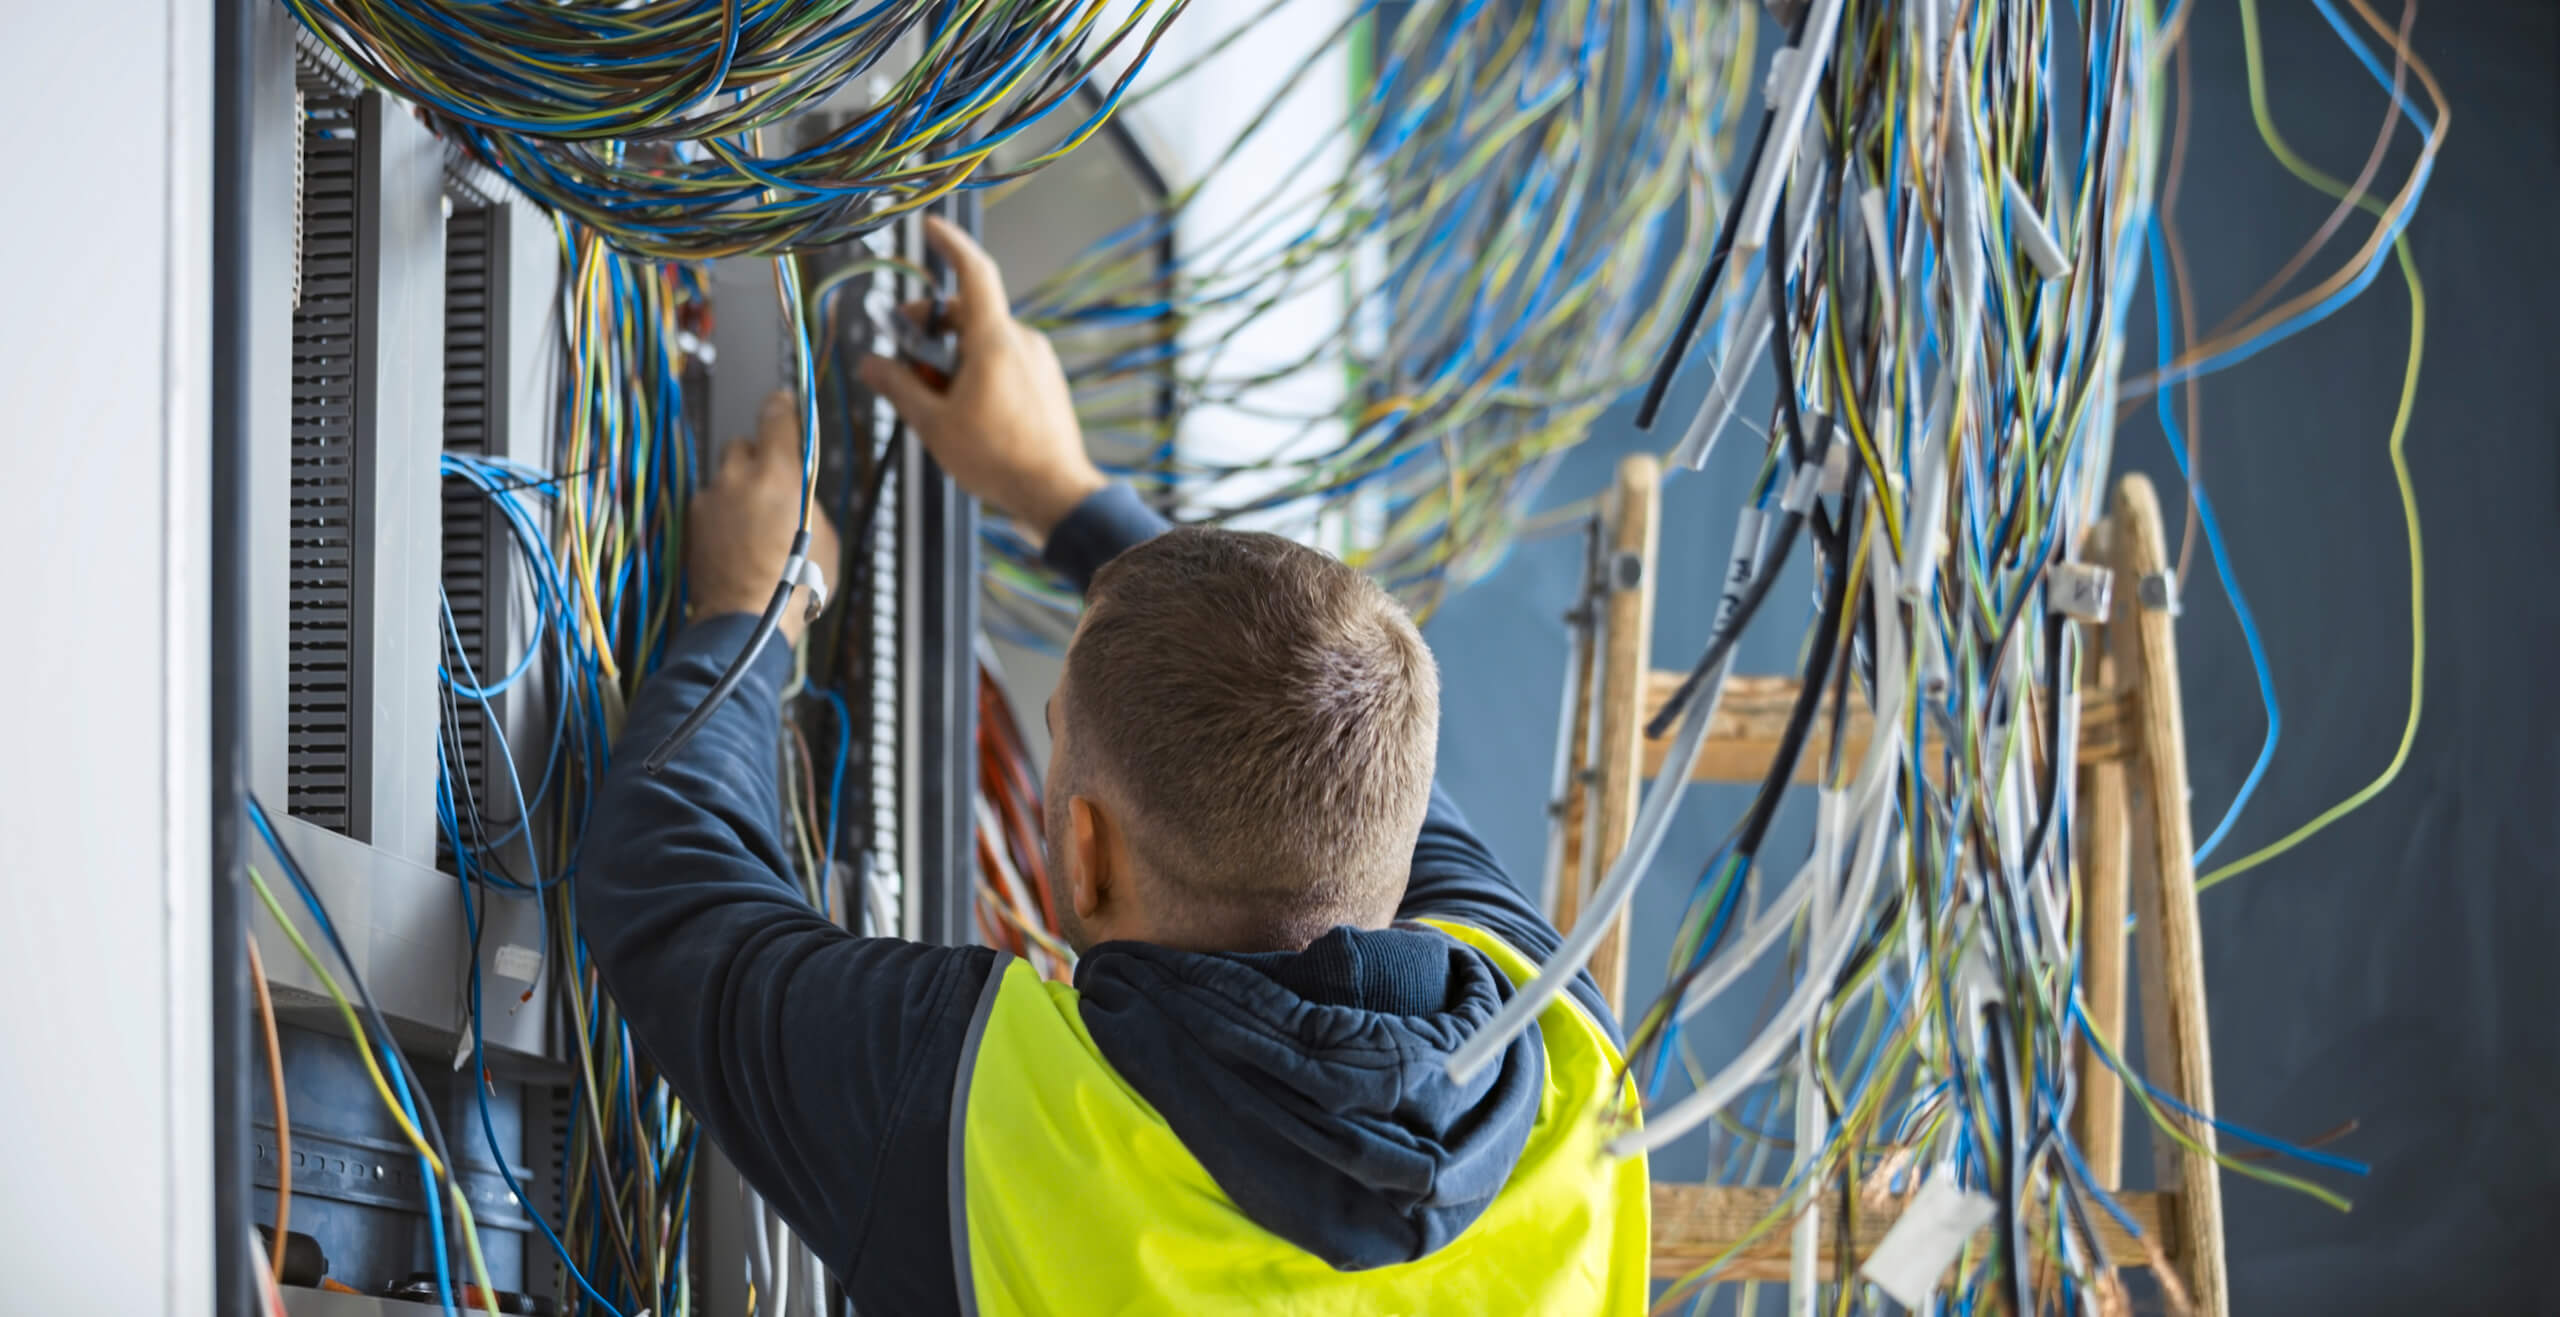 Elektrotechniker arbeitet an vielen bunten Kabeln